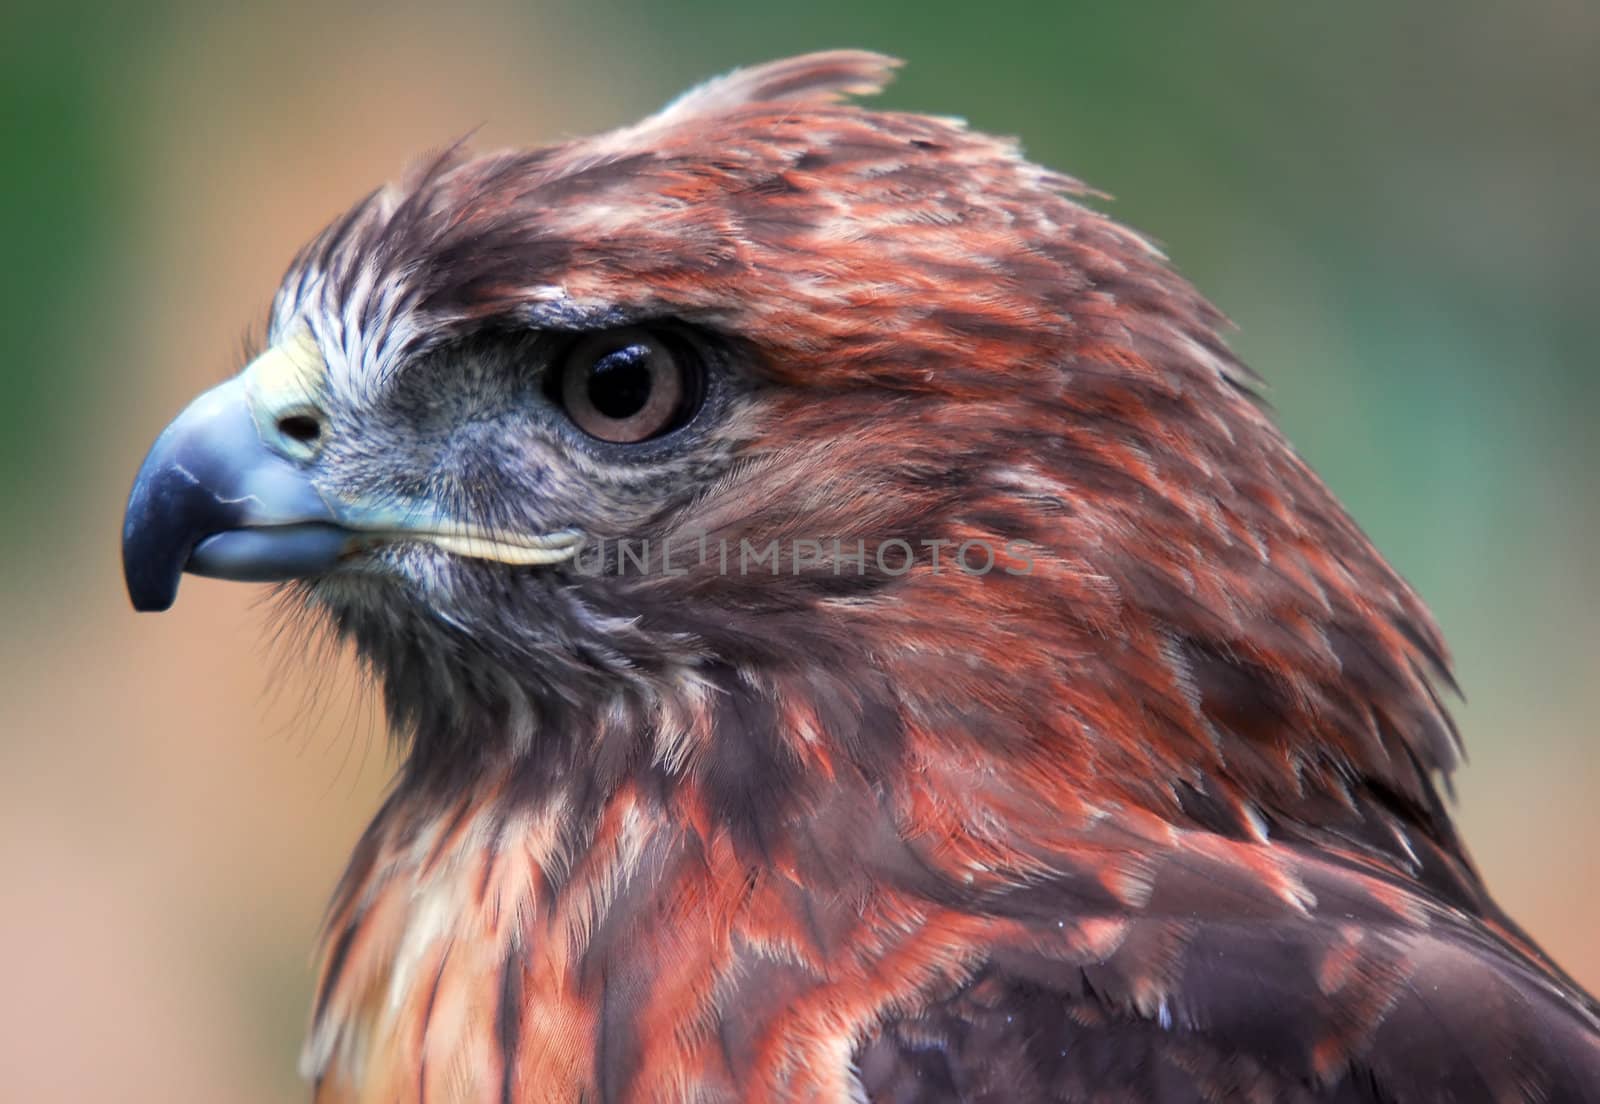 Closeup portrait of a hawk